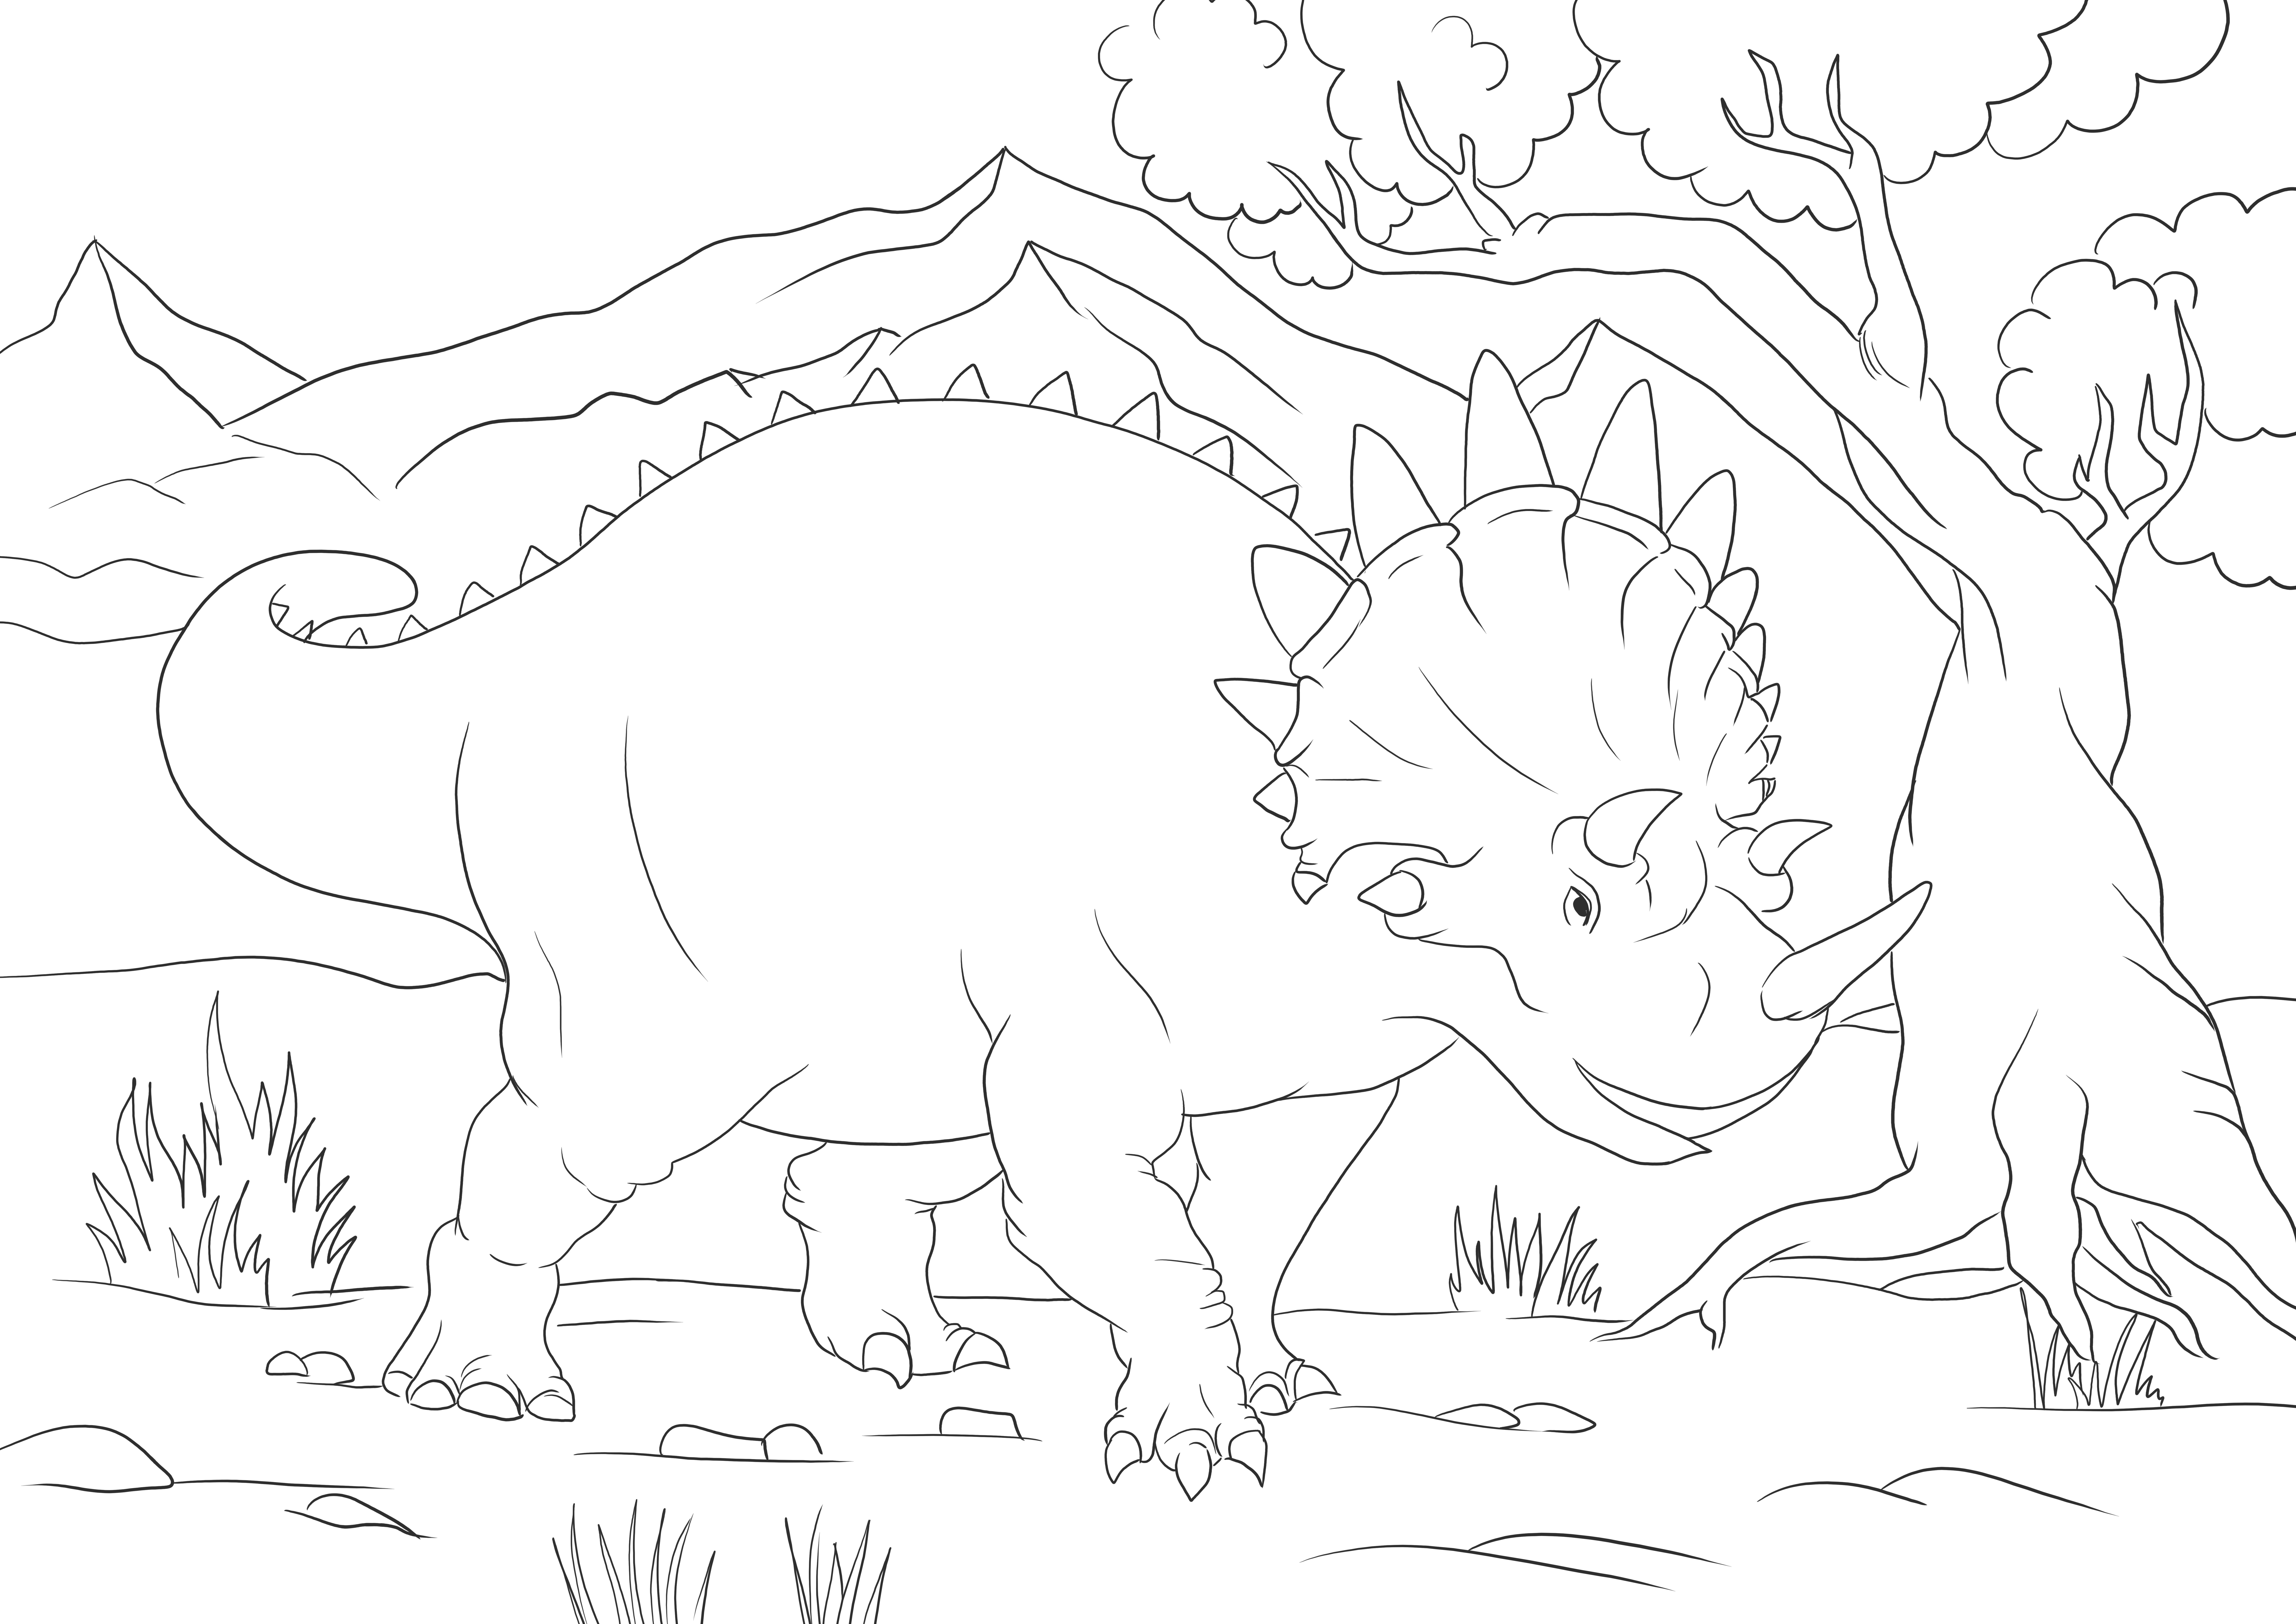 Big Triceratops imprimare sau descărcare gratuită a imaginii pentru a colora copiii